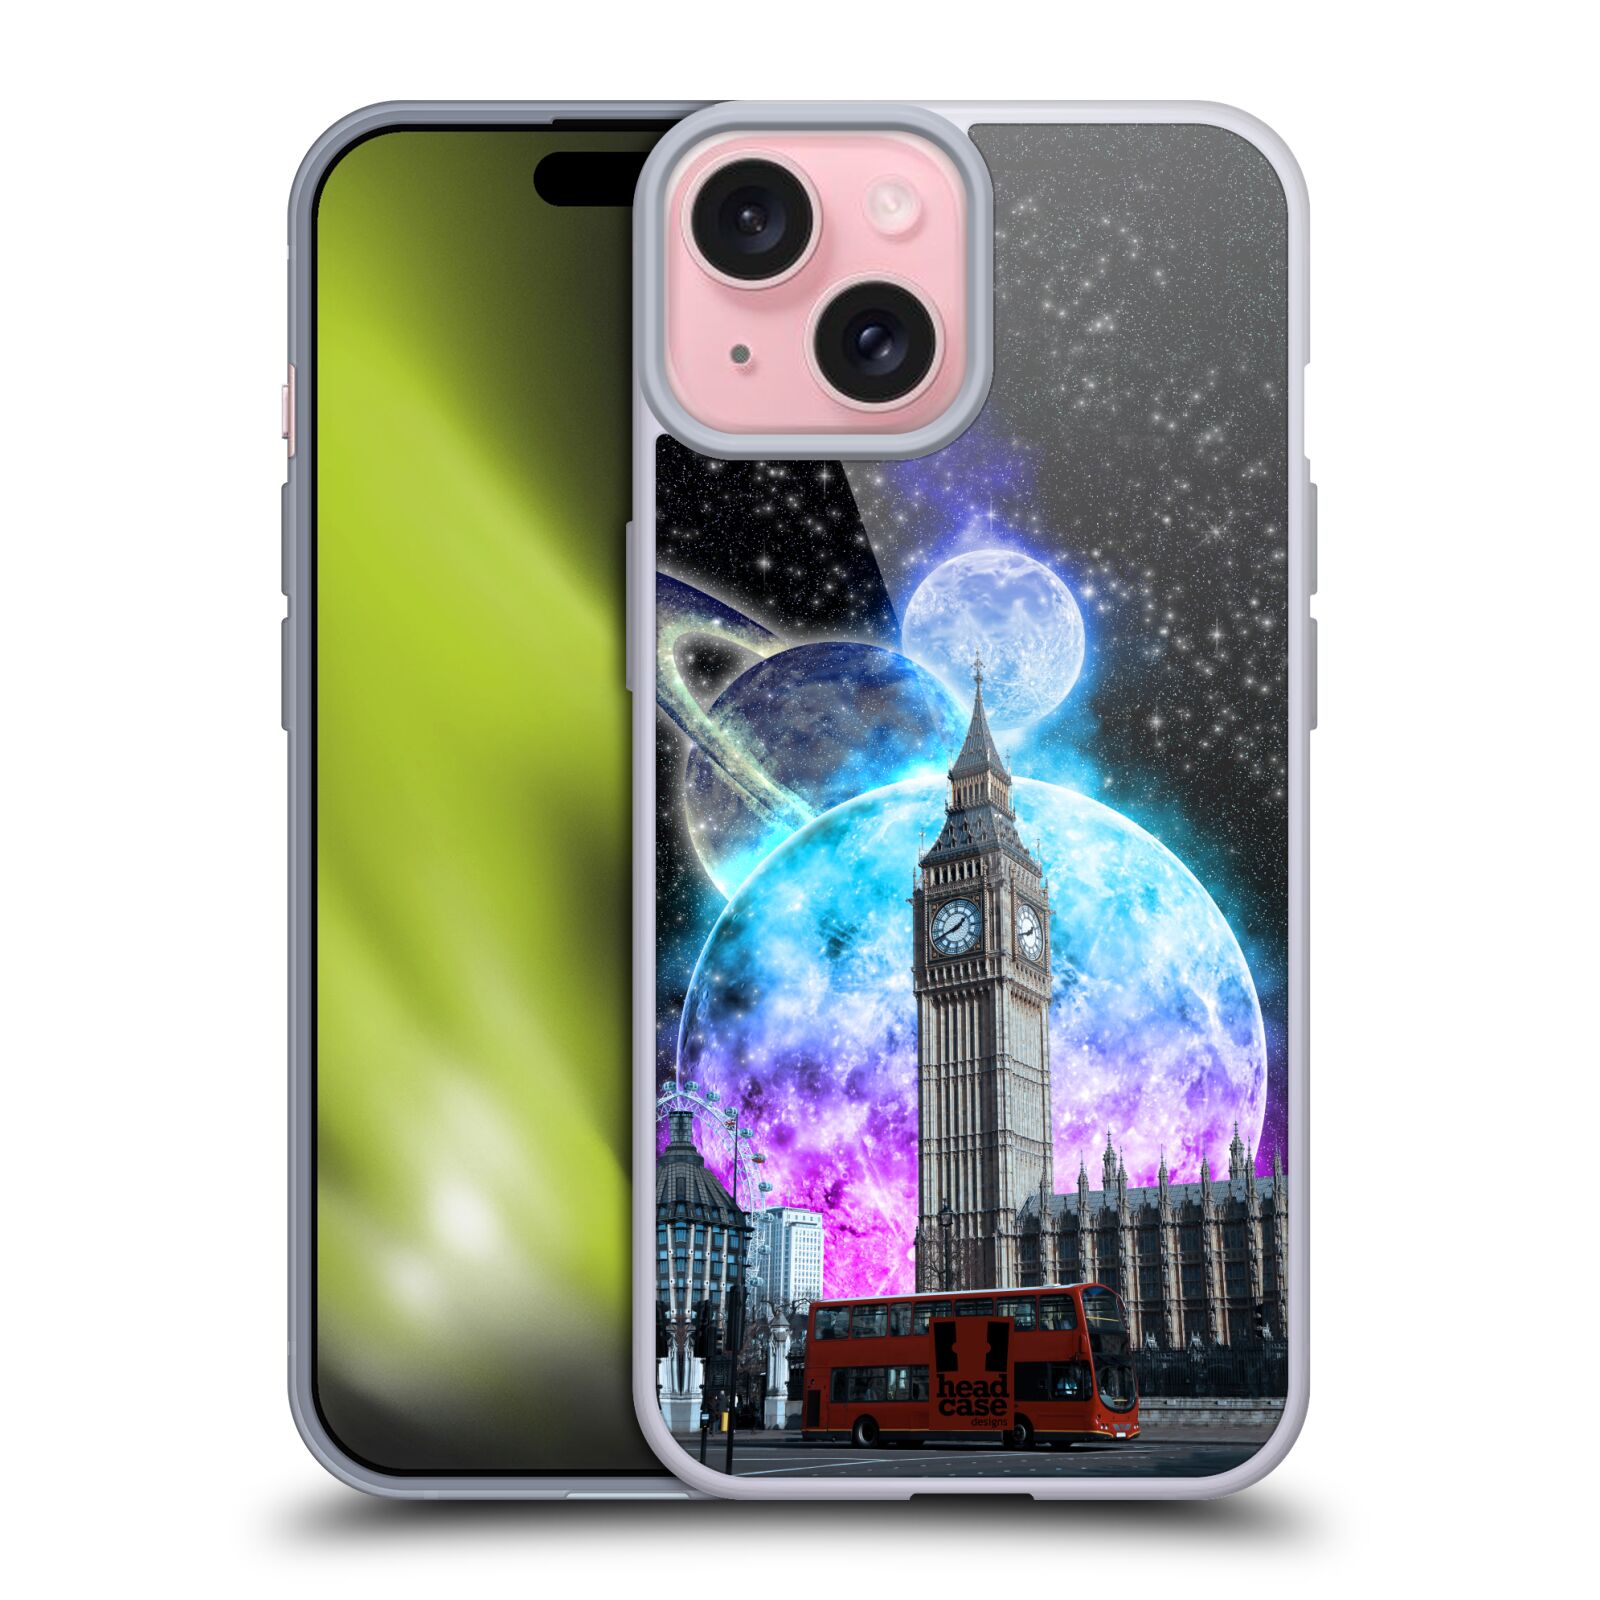 Silikonové lesklé pouzdro na mobil Apple iPhone 15 - Head Case - Měsíční Londýn (Silikonový lesklý kryt, obal, pouzdro na mobilní telefon Apple iPhone 15 s motivem Měsíční Londýn)